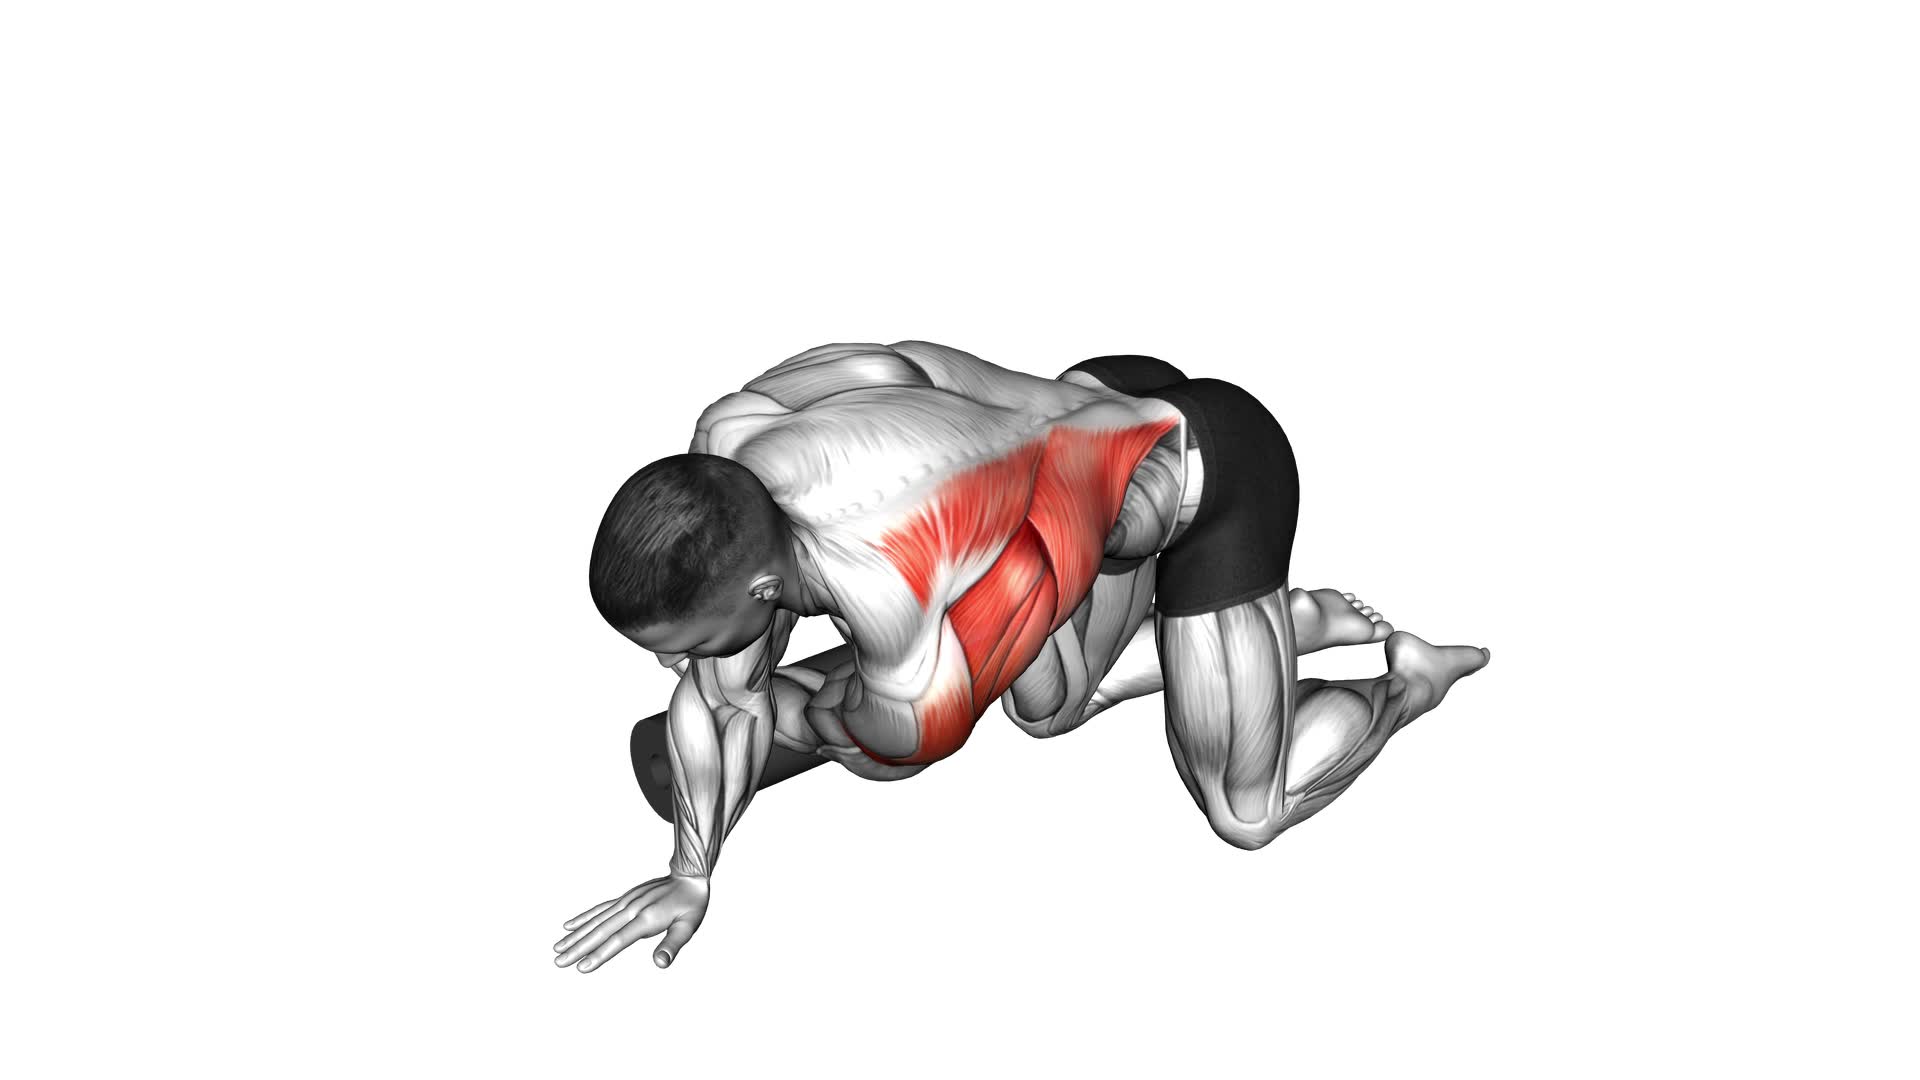 Roll Kneeling Upper Back Rotation - Video Exercise Guide & Tips